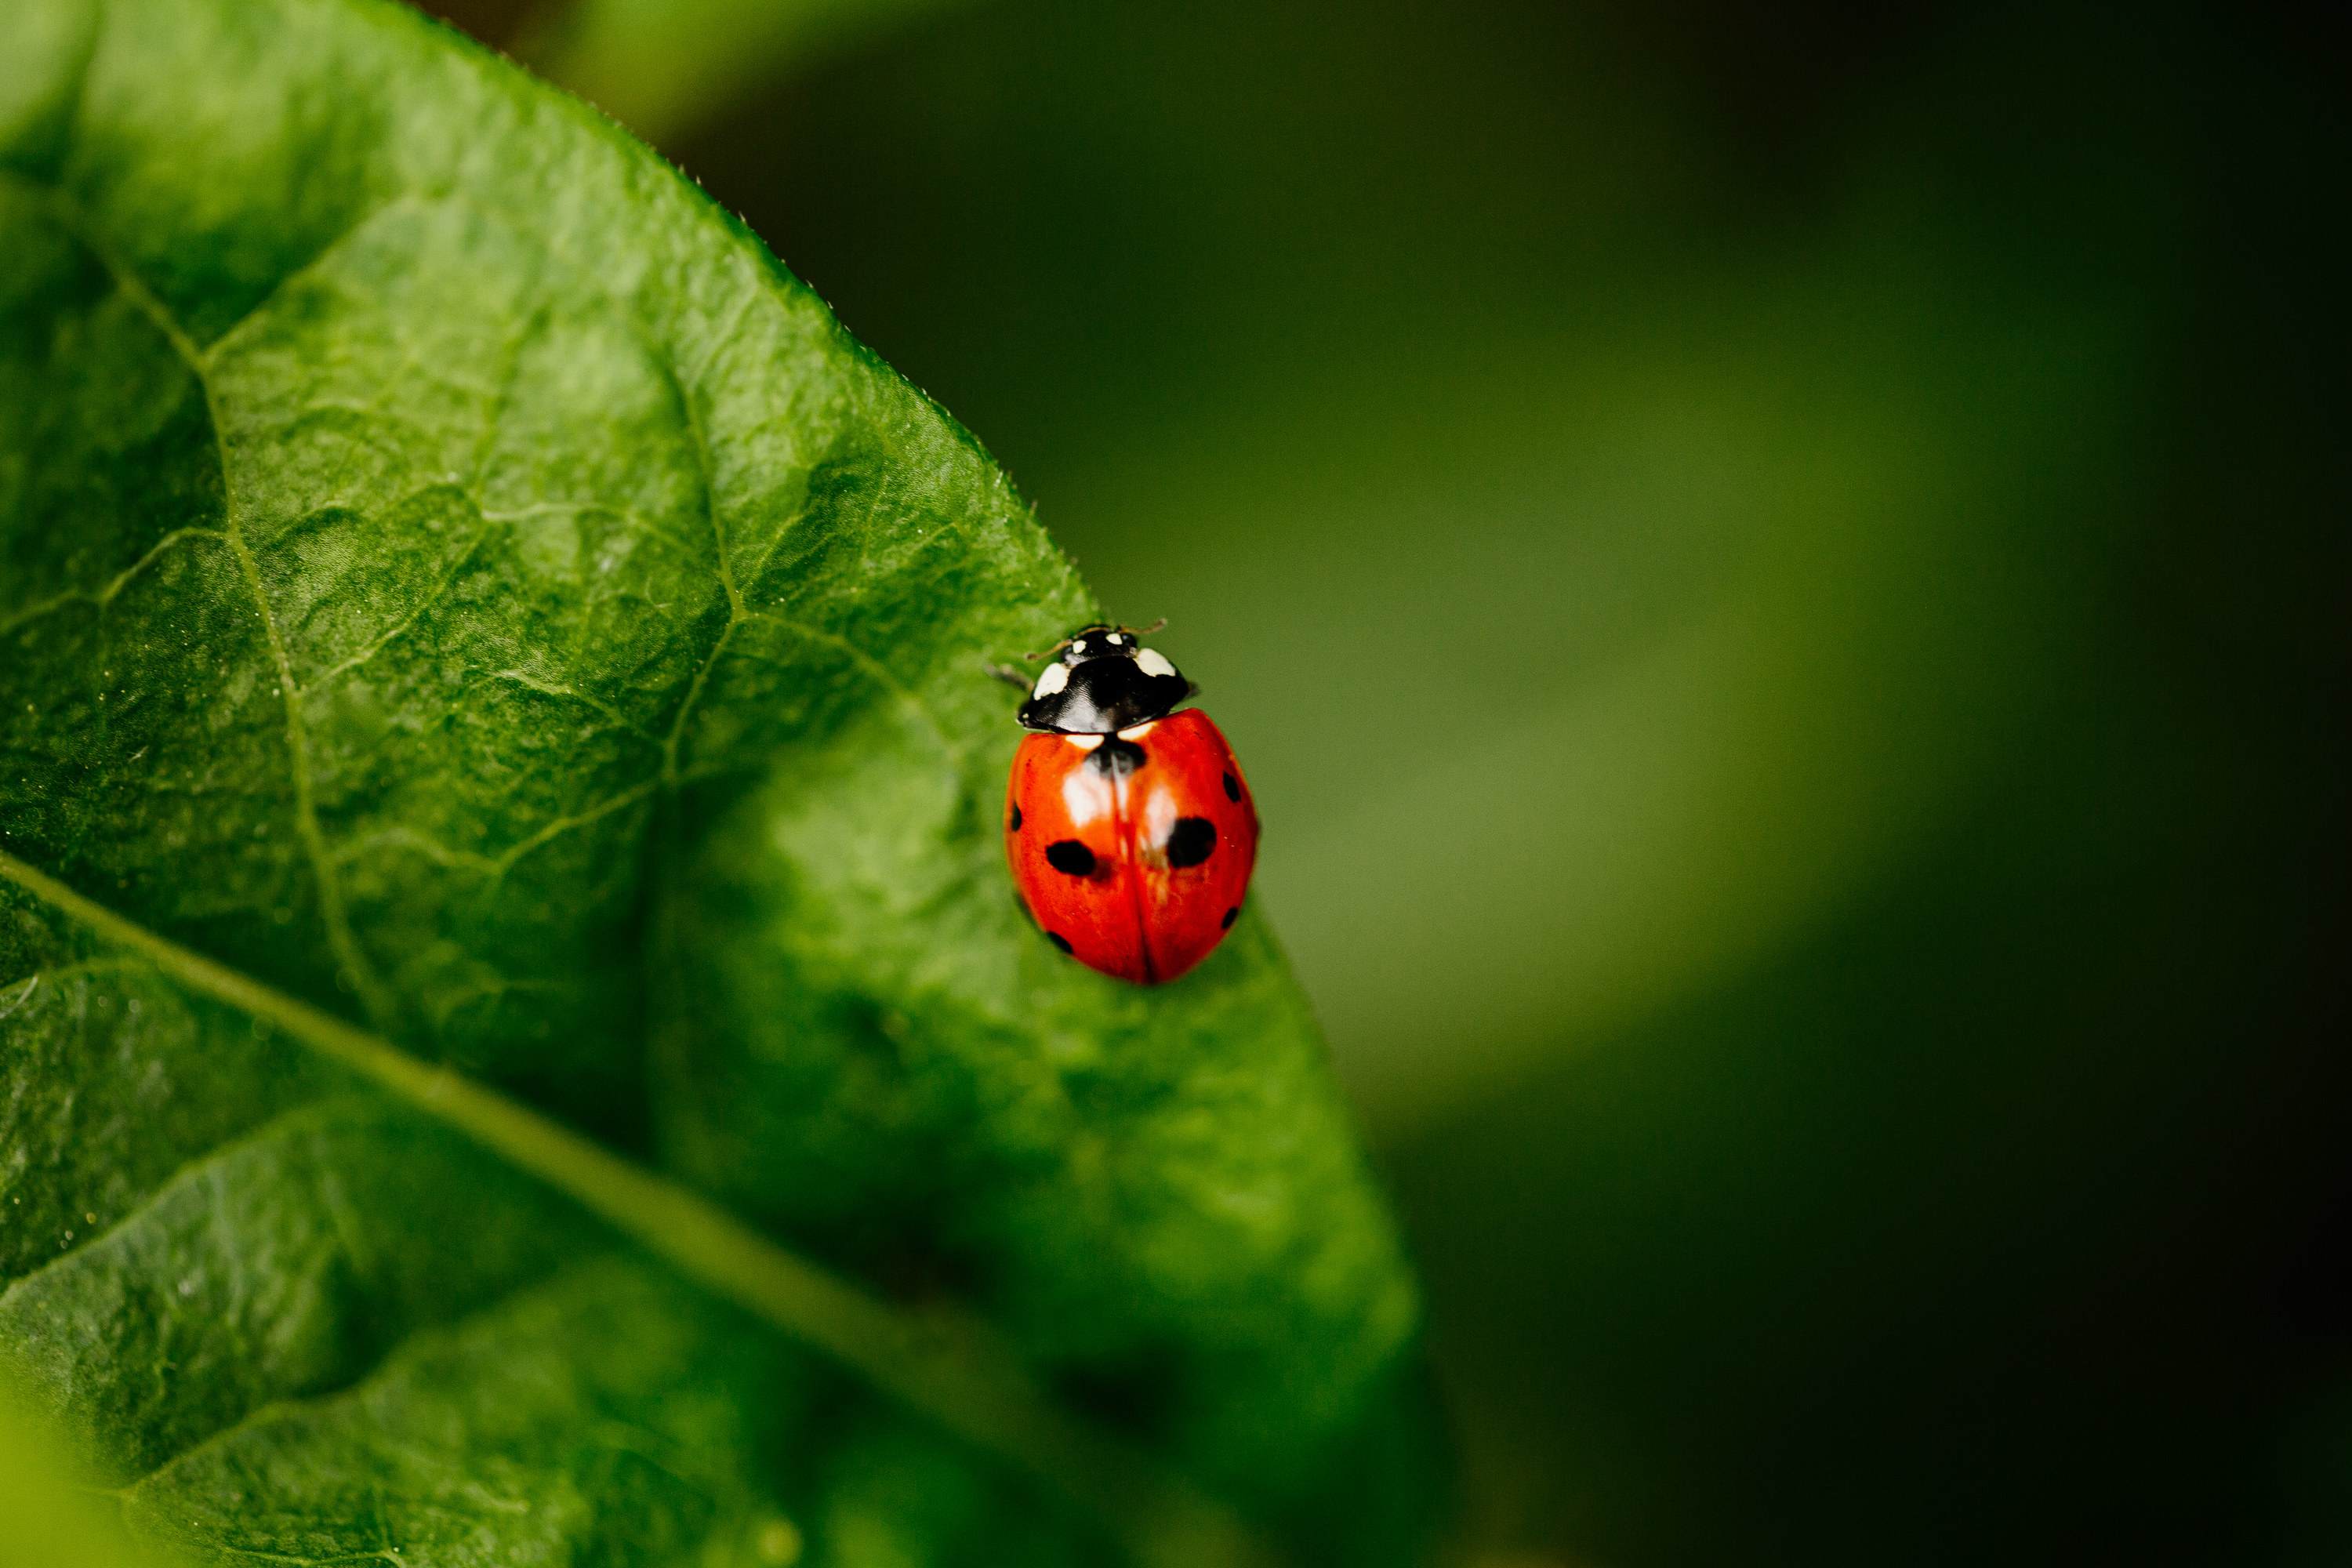 A ladybug sitting on a leaf